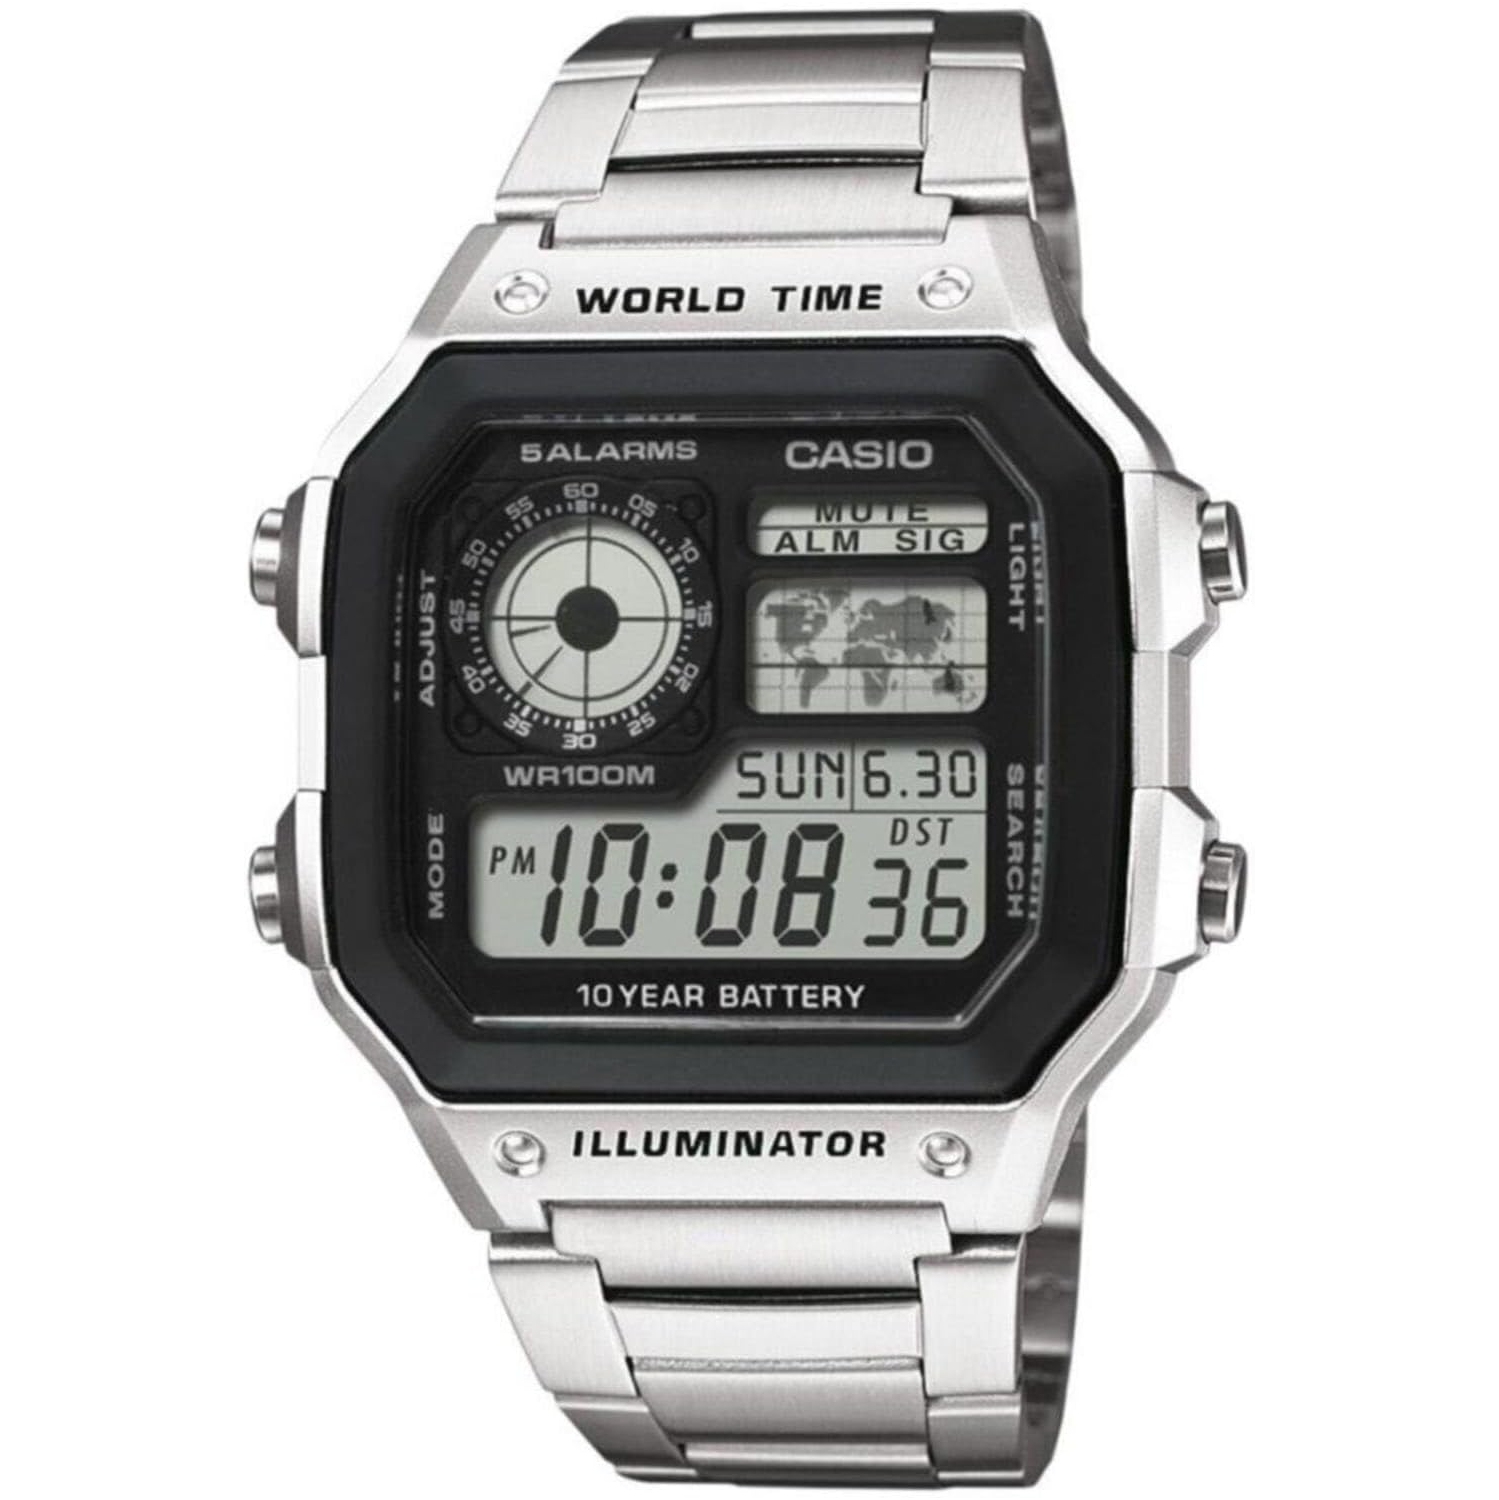 Casio Men's Digital Watch World Time